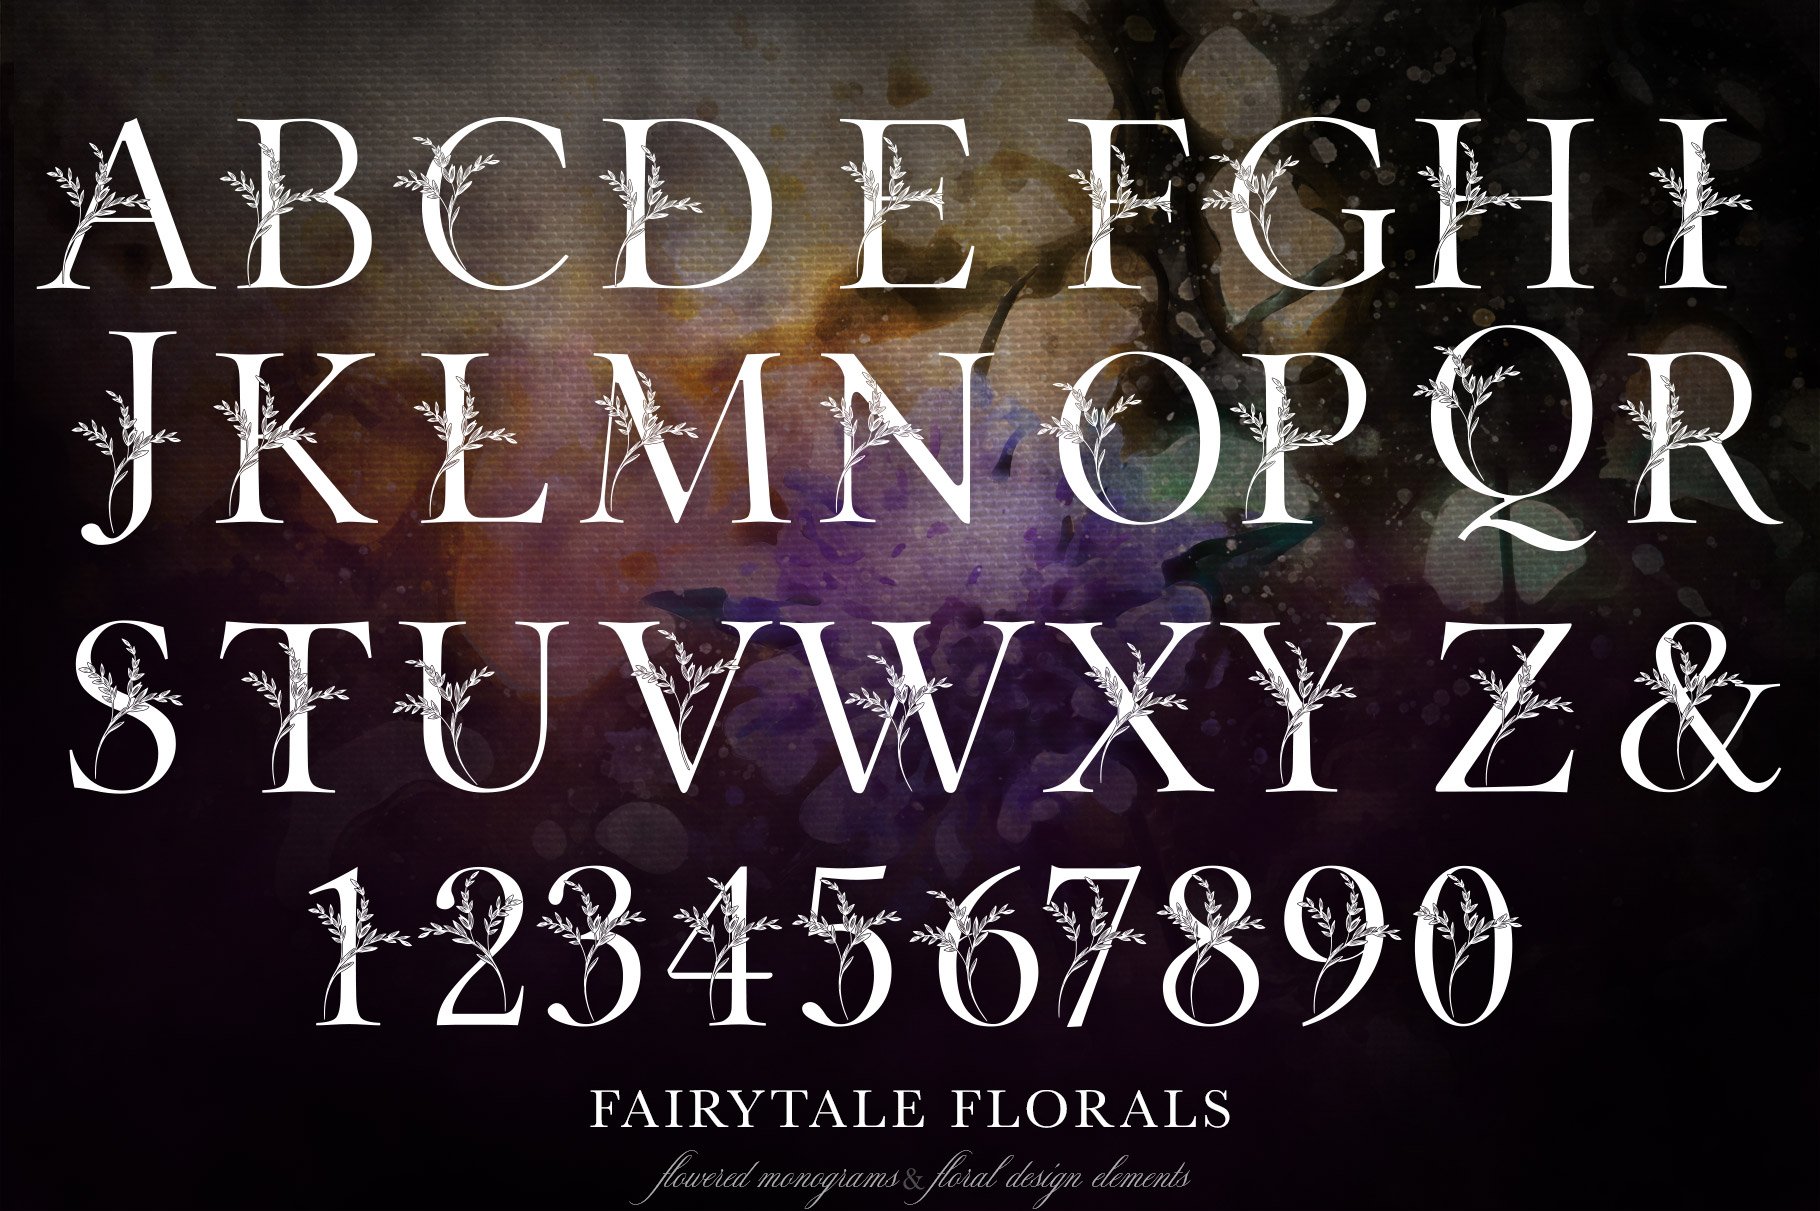 Fairytale Florals Monogram Set